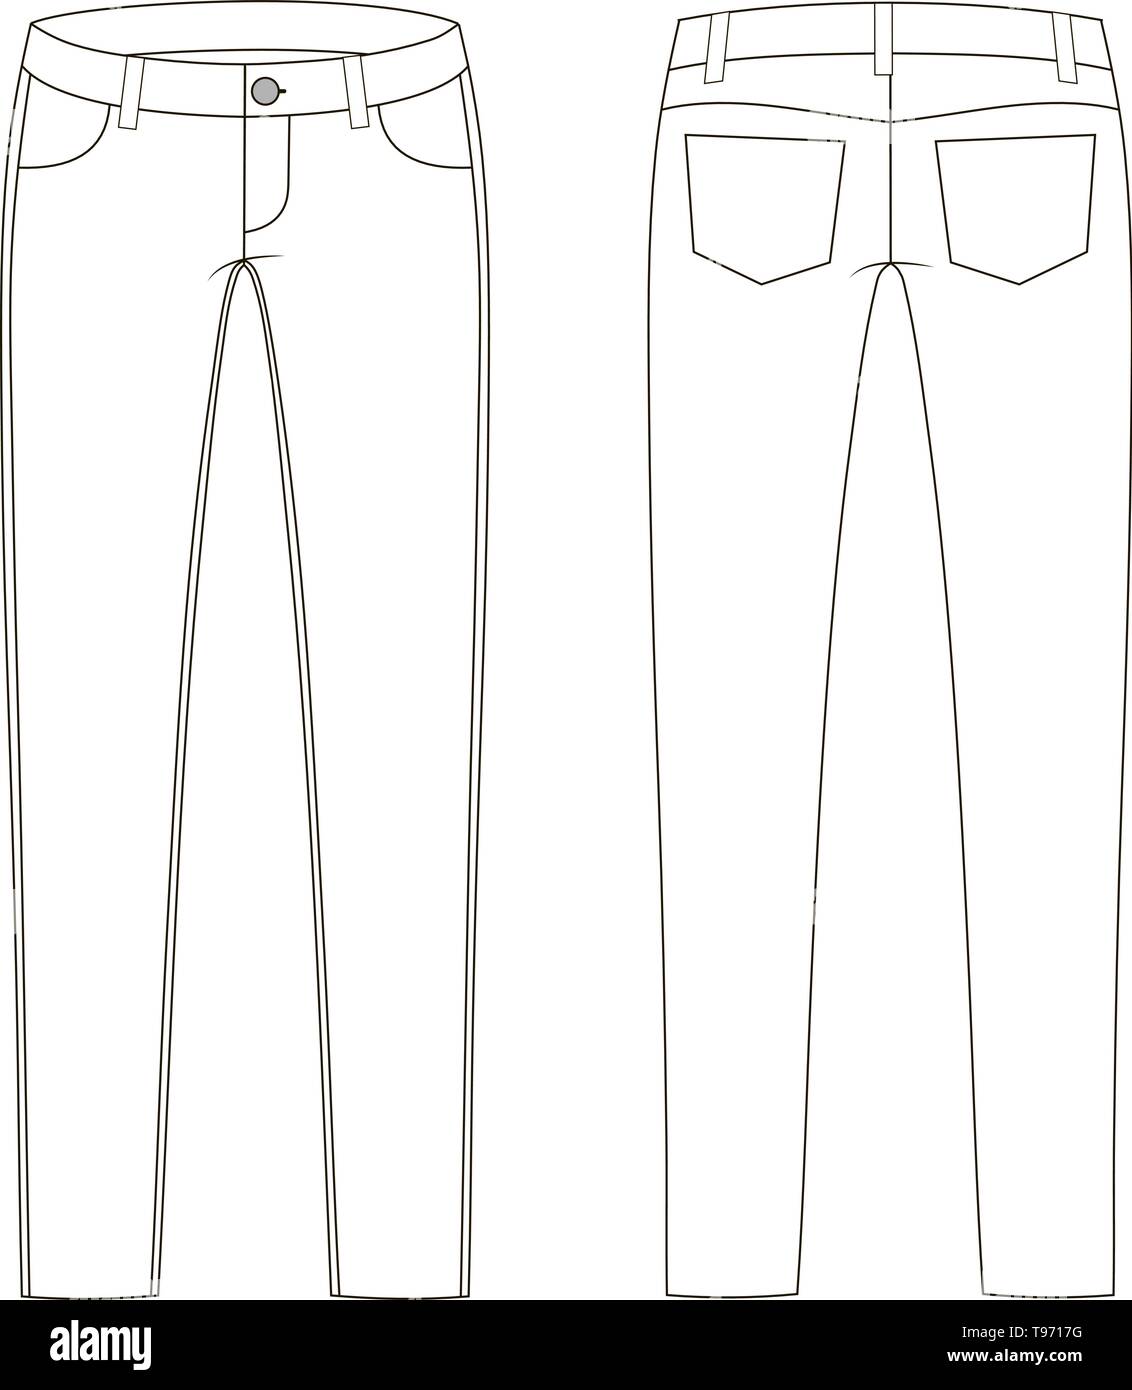 La moda de los pantalones vaqueros en dibujo técnico gráfico vectorial  Imagen Vector de stock - Alamy